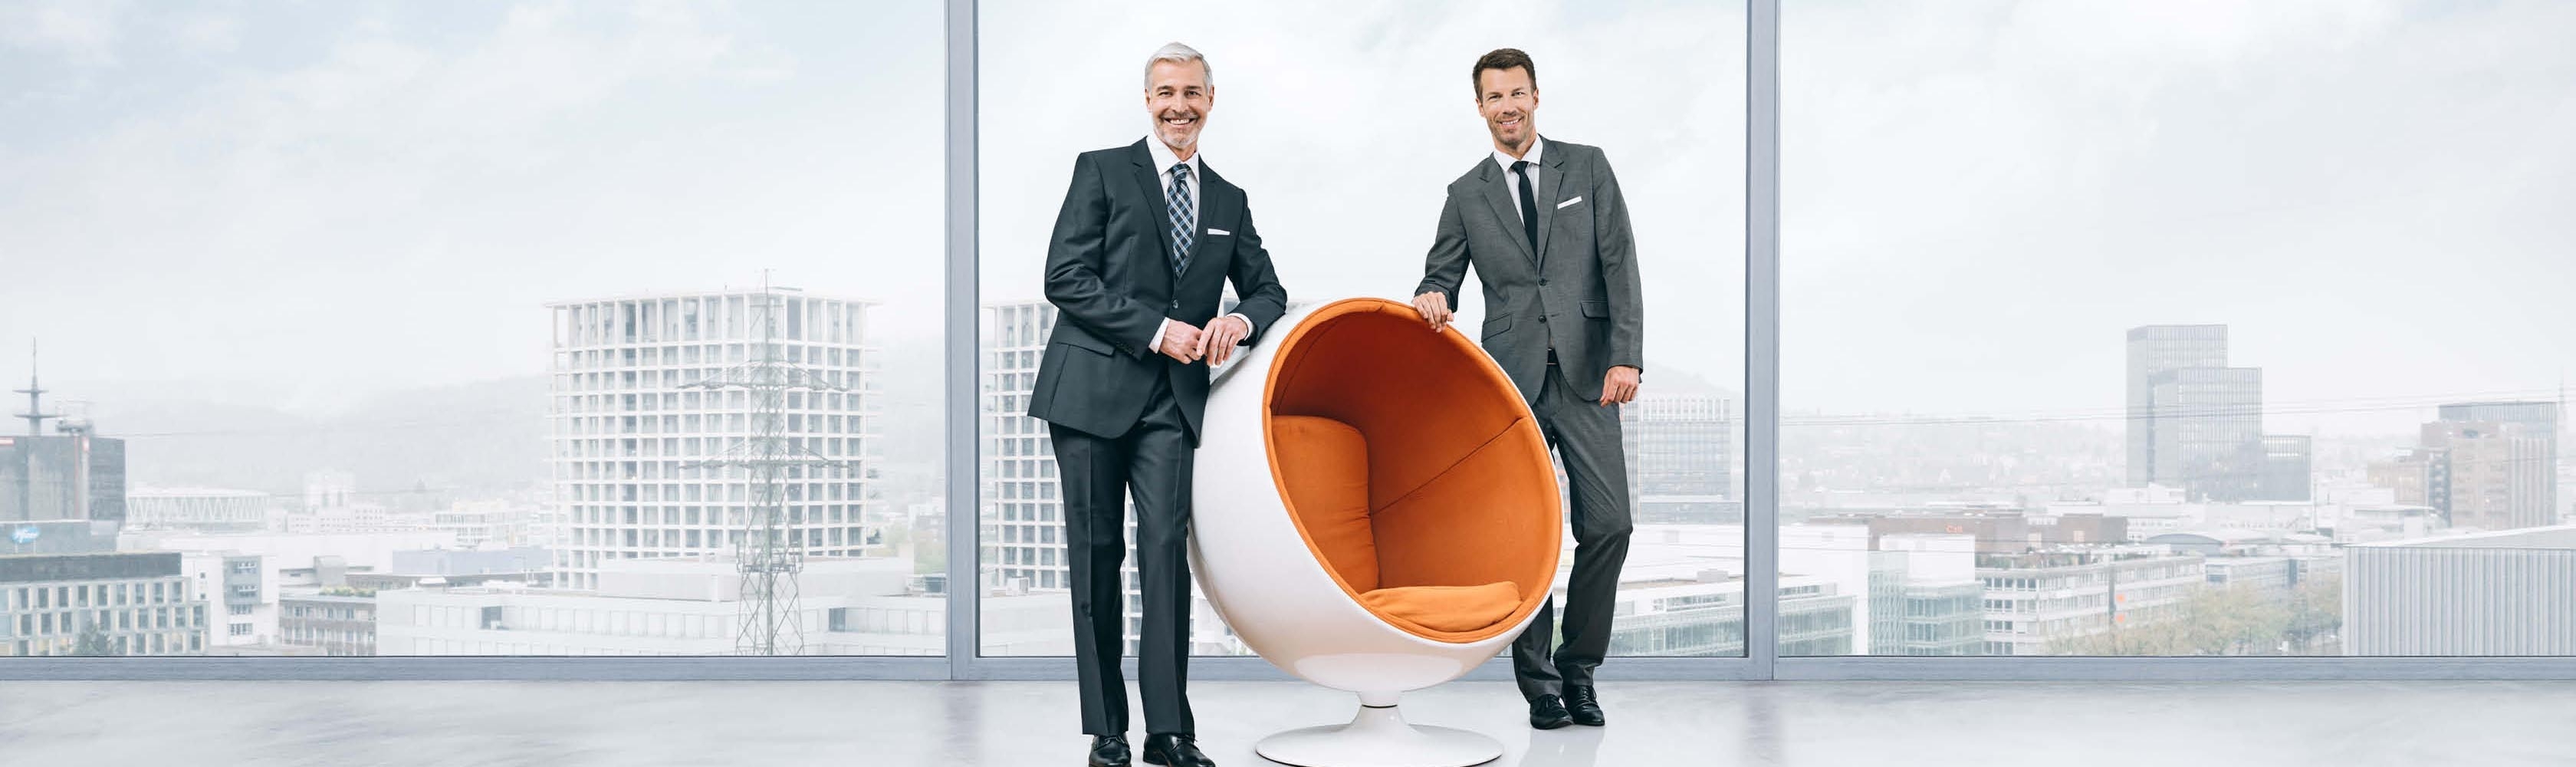 Männer stehen neben orangem Sessel